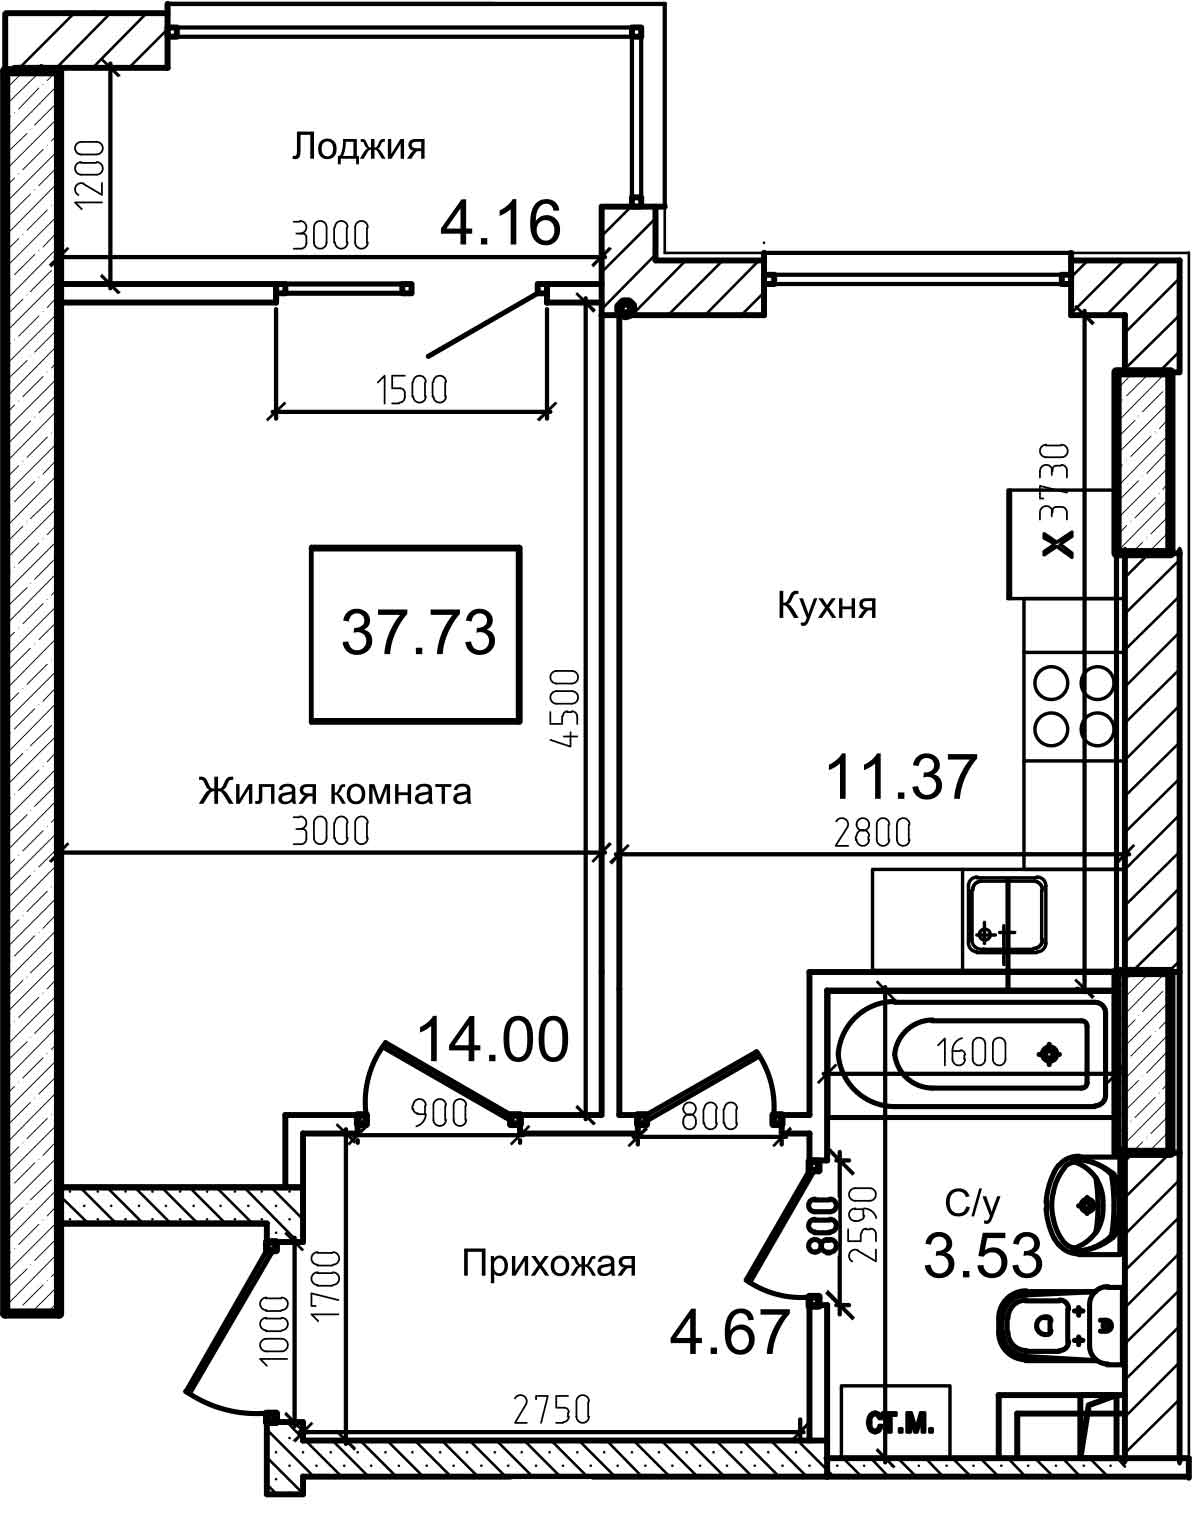 Планування 1-к квартира площею 37.3м2, AB-08-06/00011.